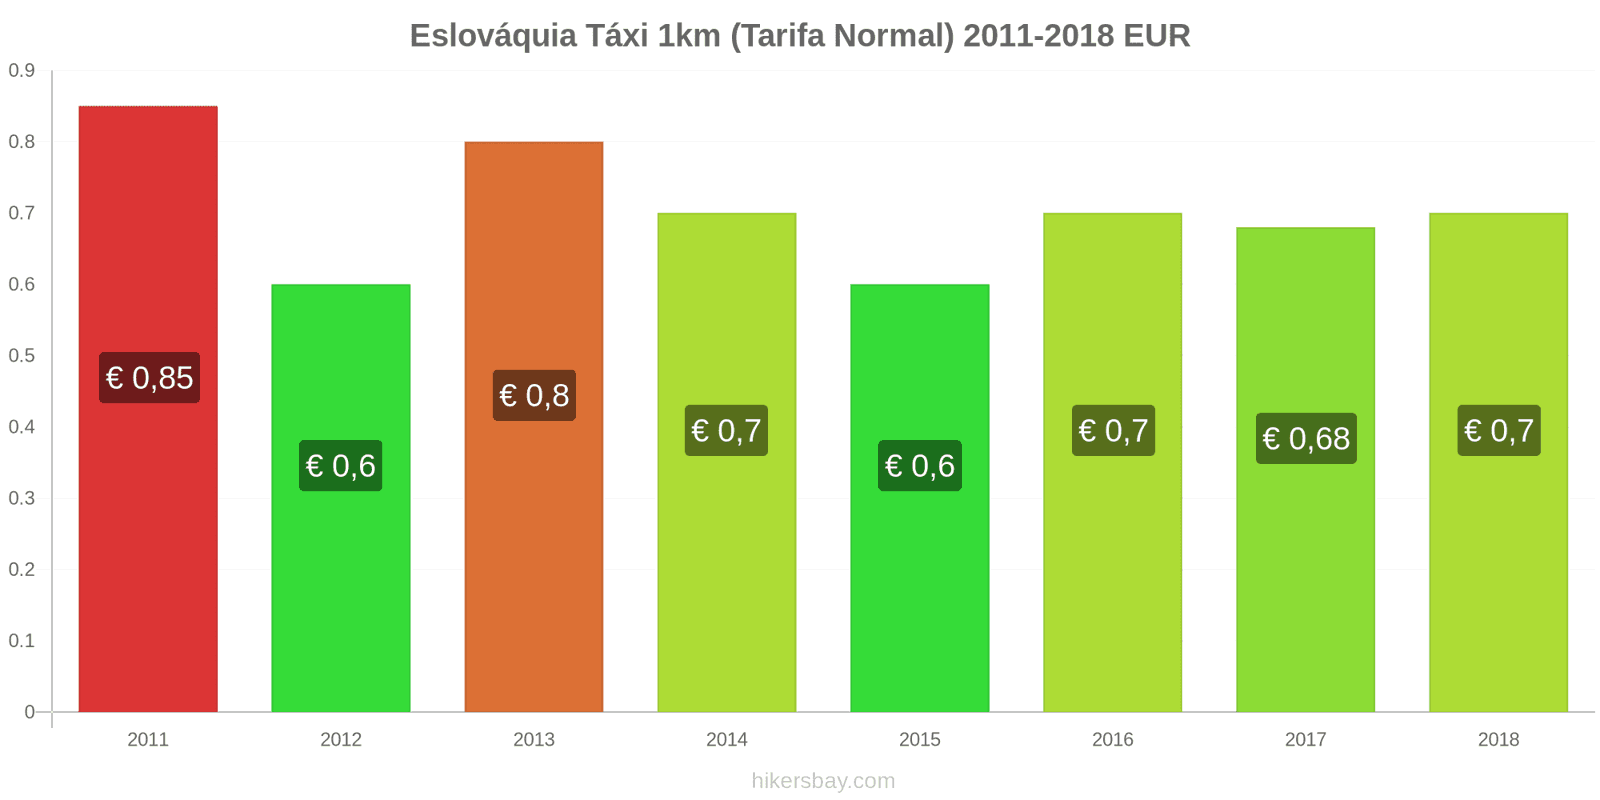 Eslováquia mudanças de preços Táxi 1km (Tarifa Normal) hikersbay.com